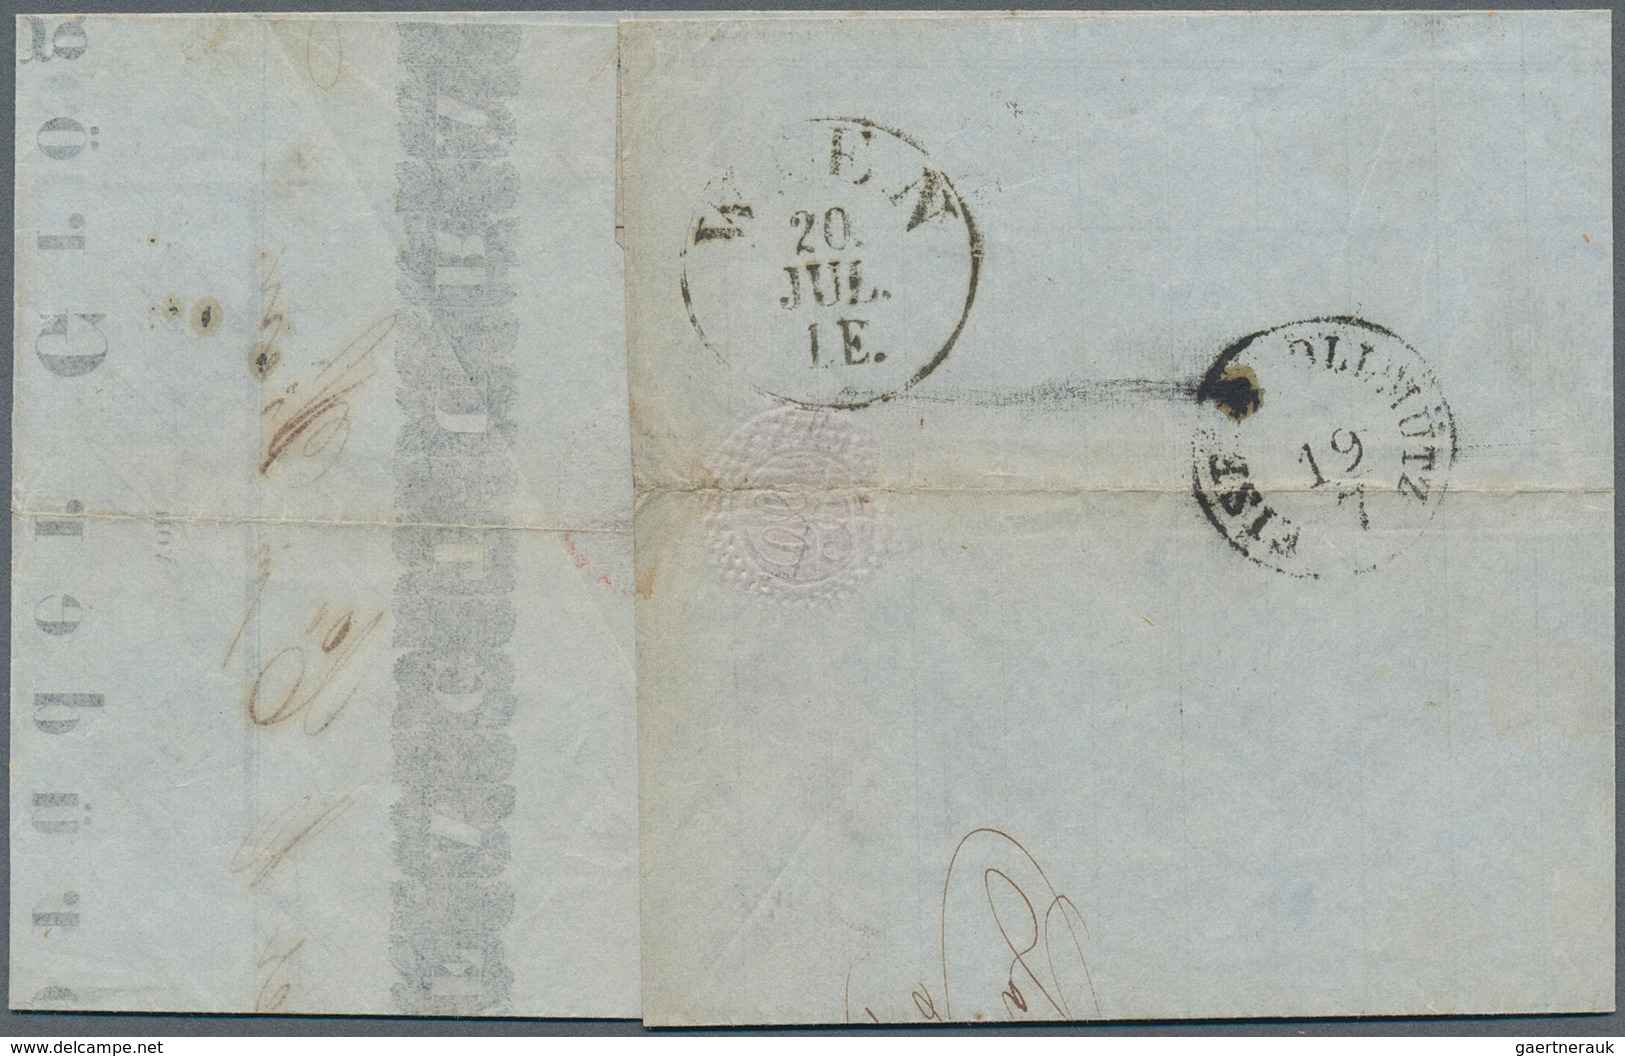 15726 Österreich - Stempel: MÄHREN: 1851/55, vier Faltbriefe mit Einzelfrankaturen 3 Kr. rot oder 9 Kr. bl